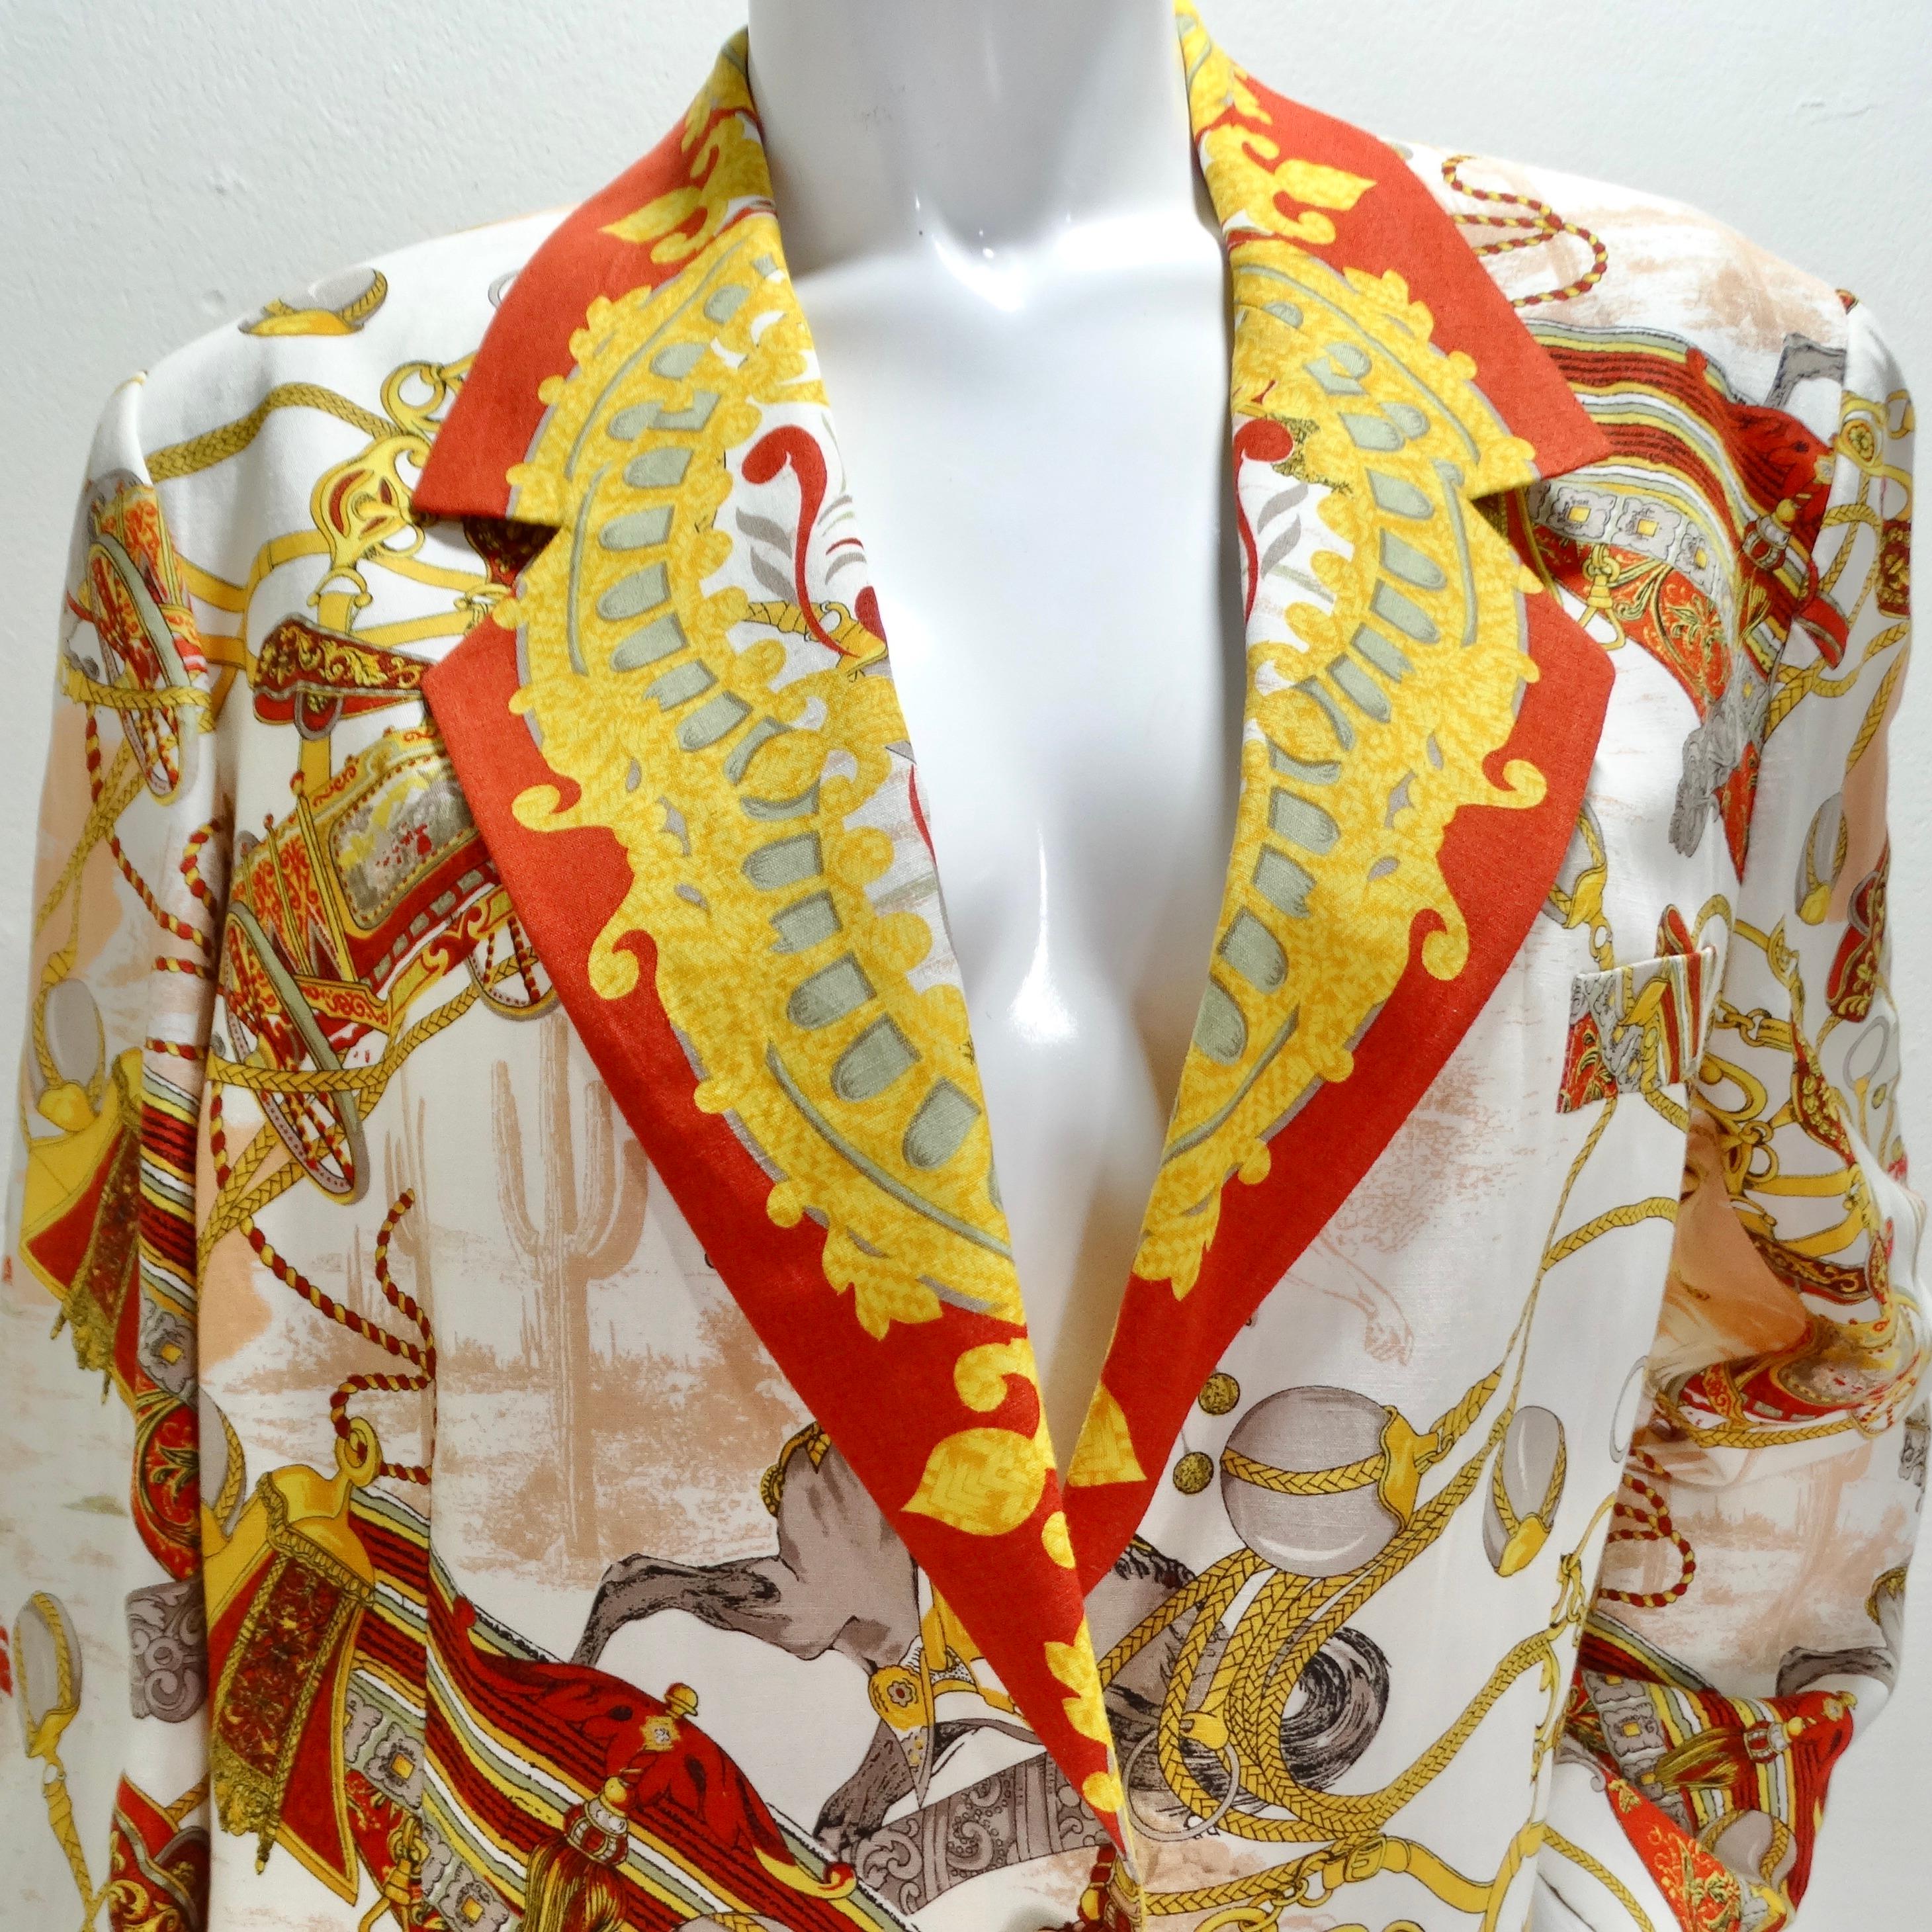 Voici le blazer Louis Feraud des années 1980, imprimé de motifs occidentaux, une pièce intemporelle et marquante qui ajoute une touche d'Ouest américain à votre garde-robe. Réalisé avec une attention méticuleuse aux détails, ce blazer structuré